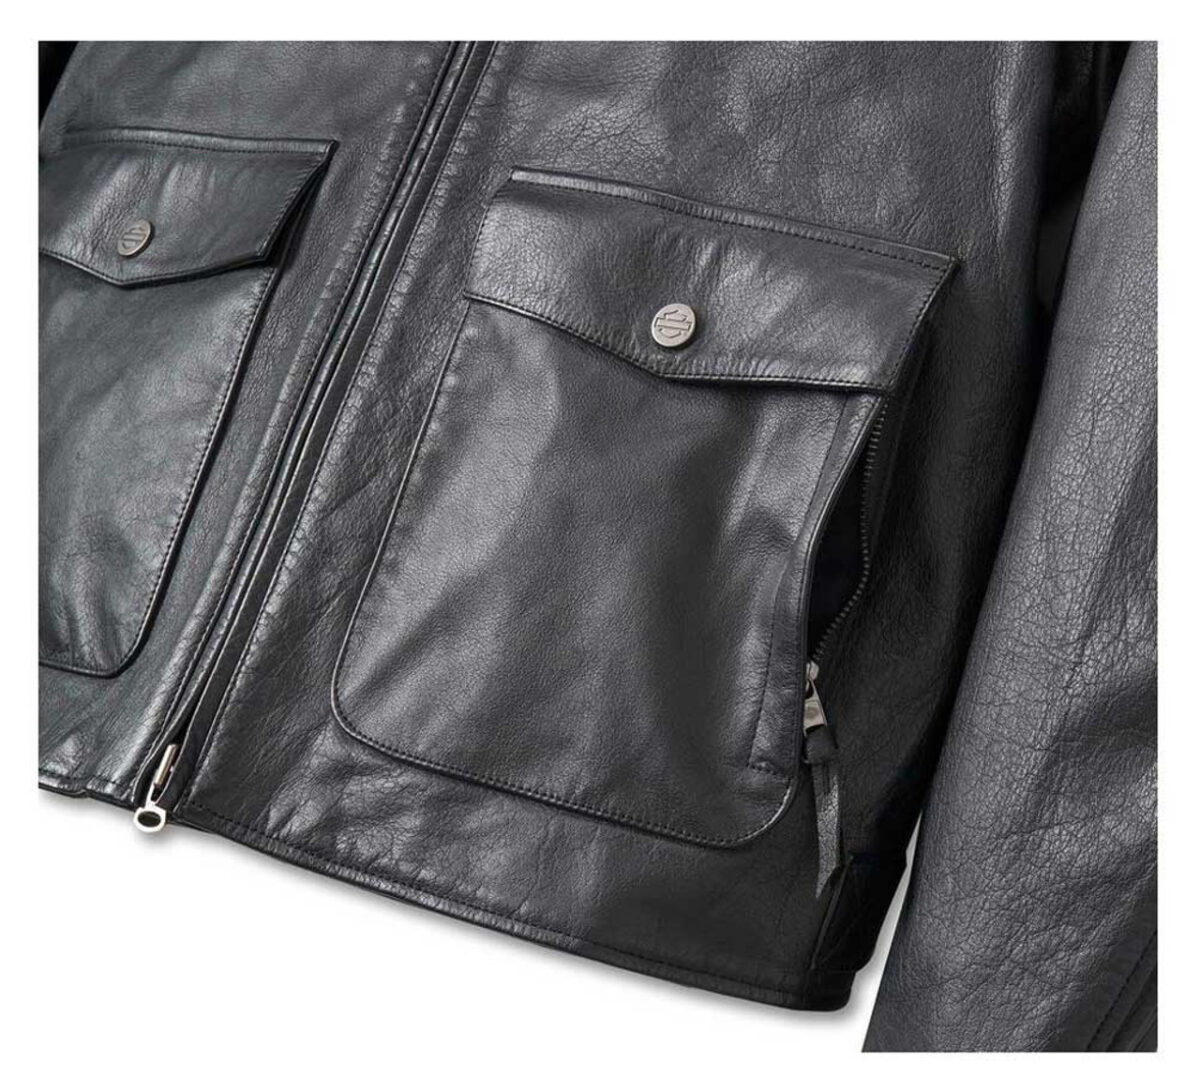 Harley-Davidson Men's Layering System Captains Leather Jacket - Black